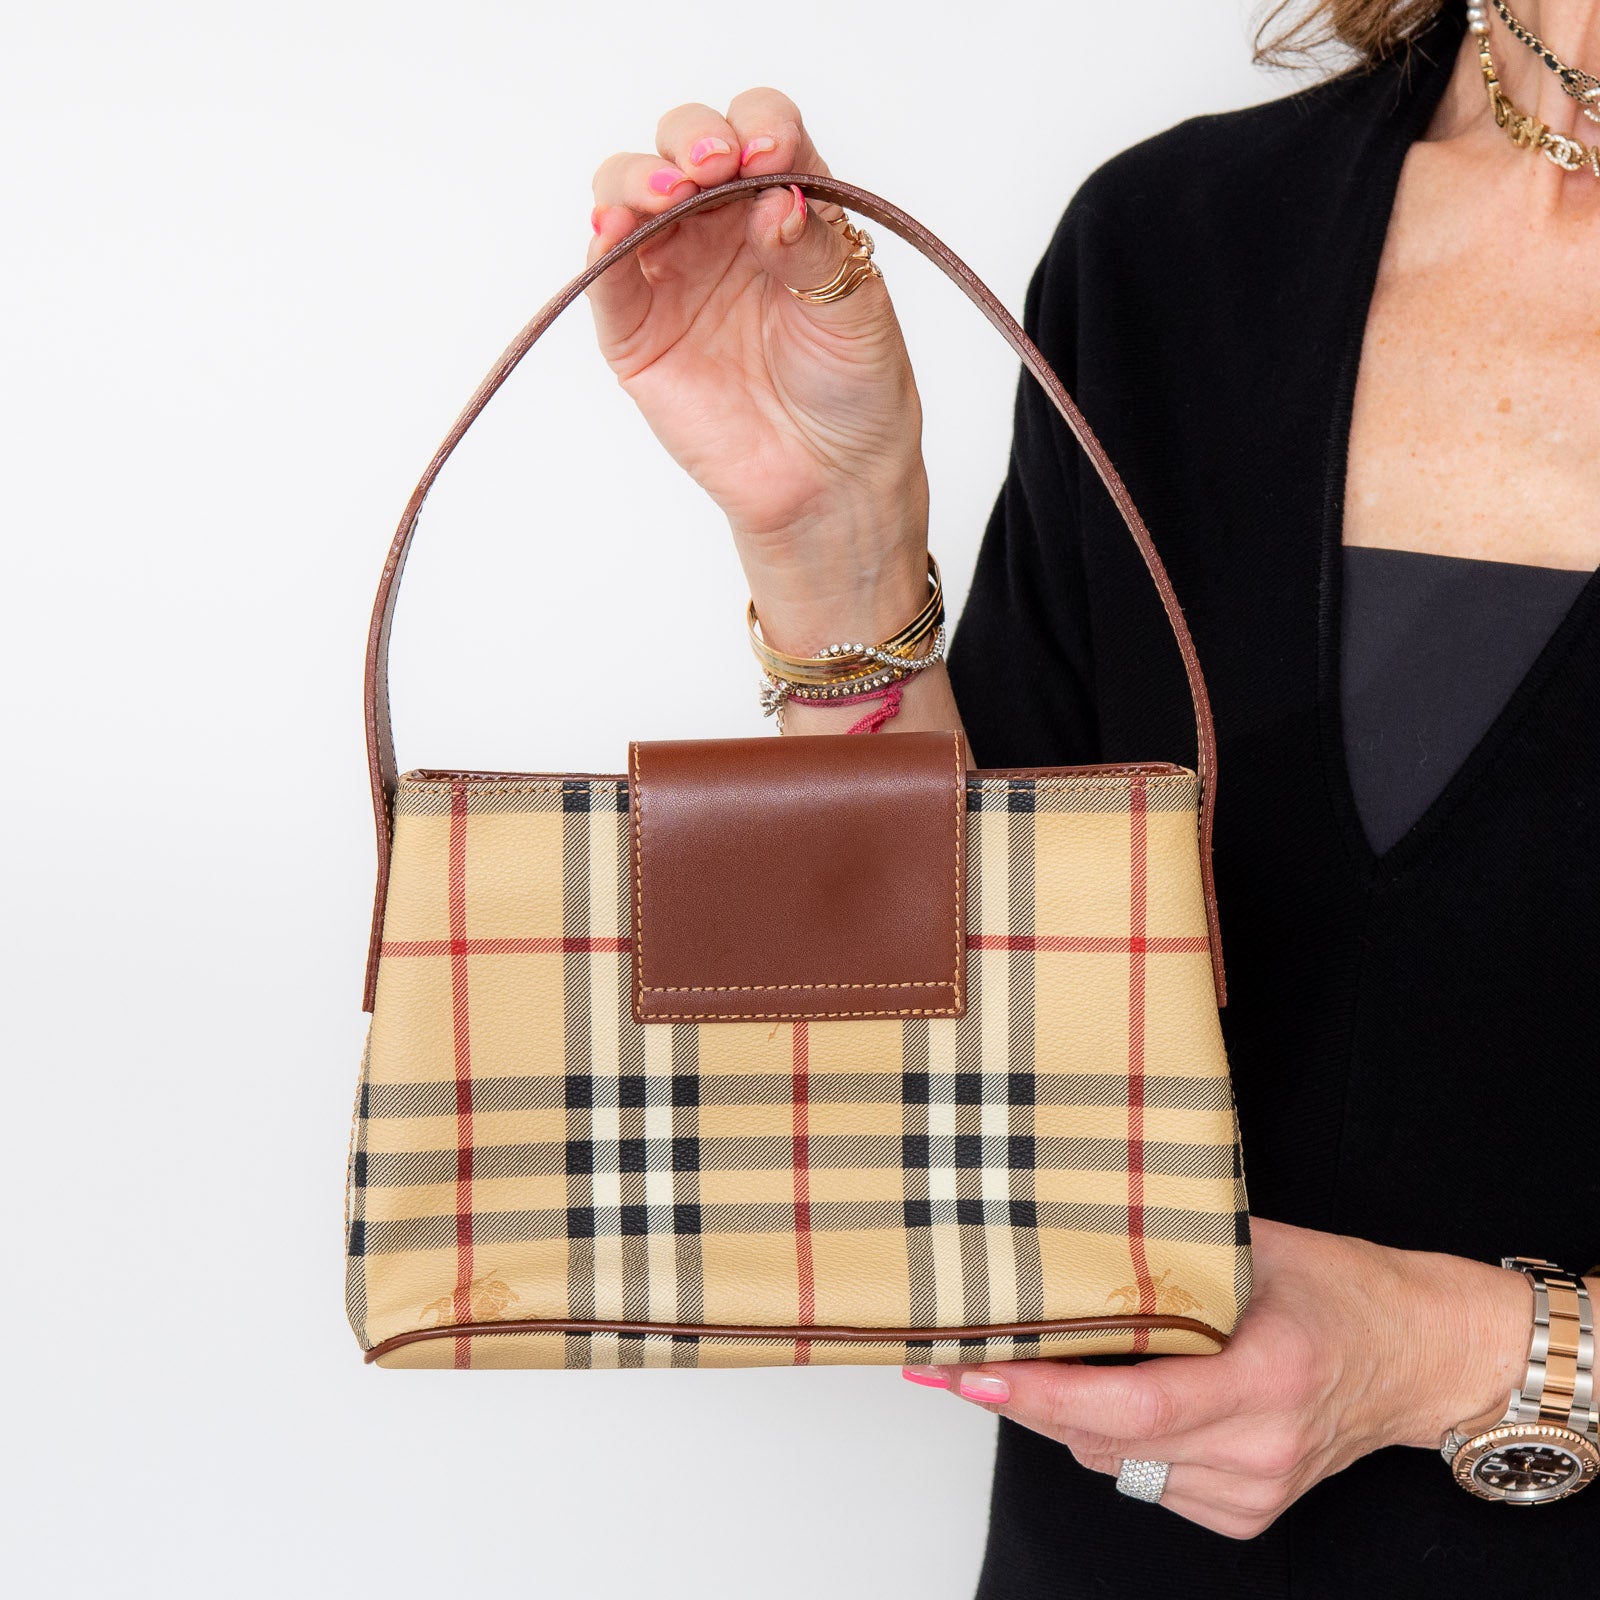 Burberry Brown Check Mini Leather Handle Bag - Image 4 of 7